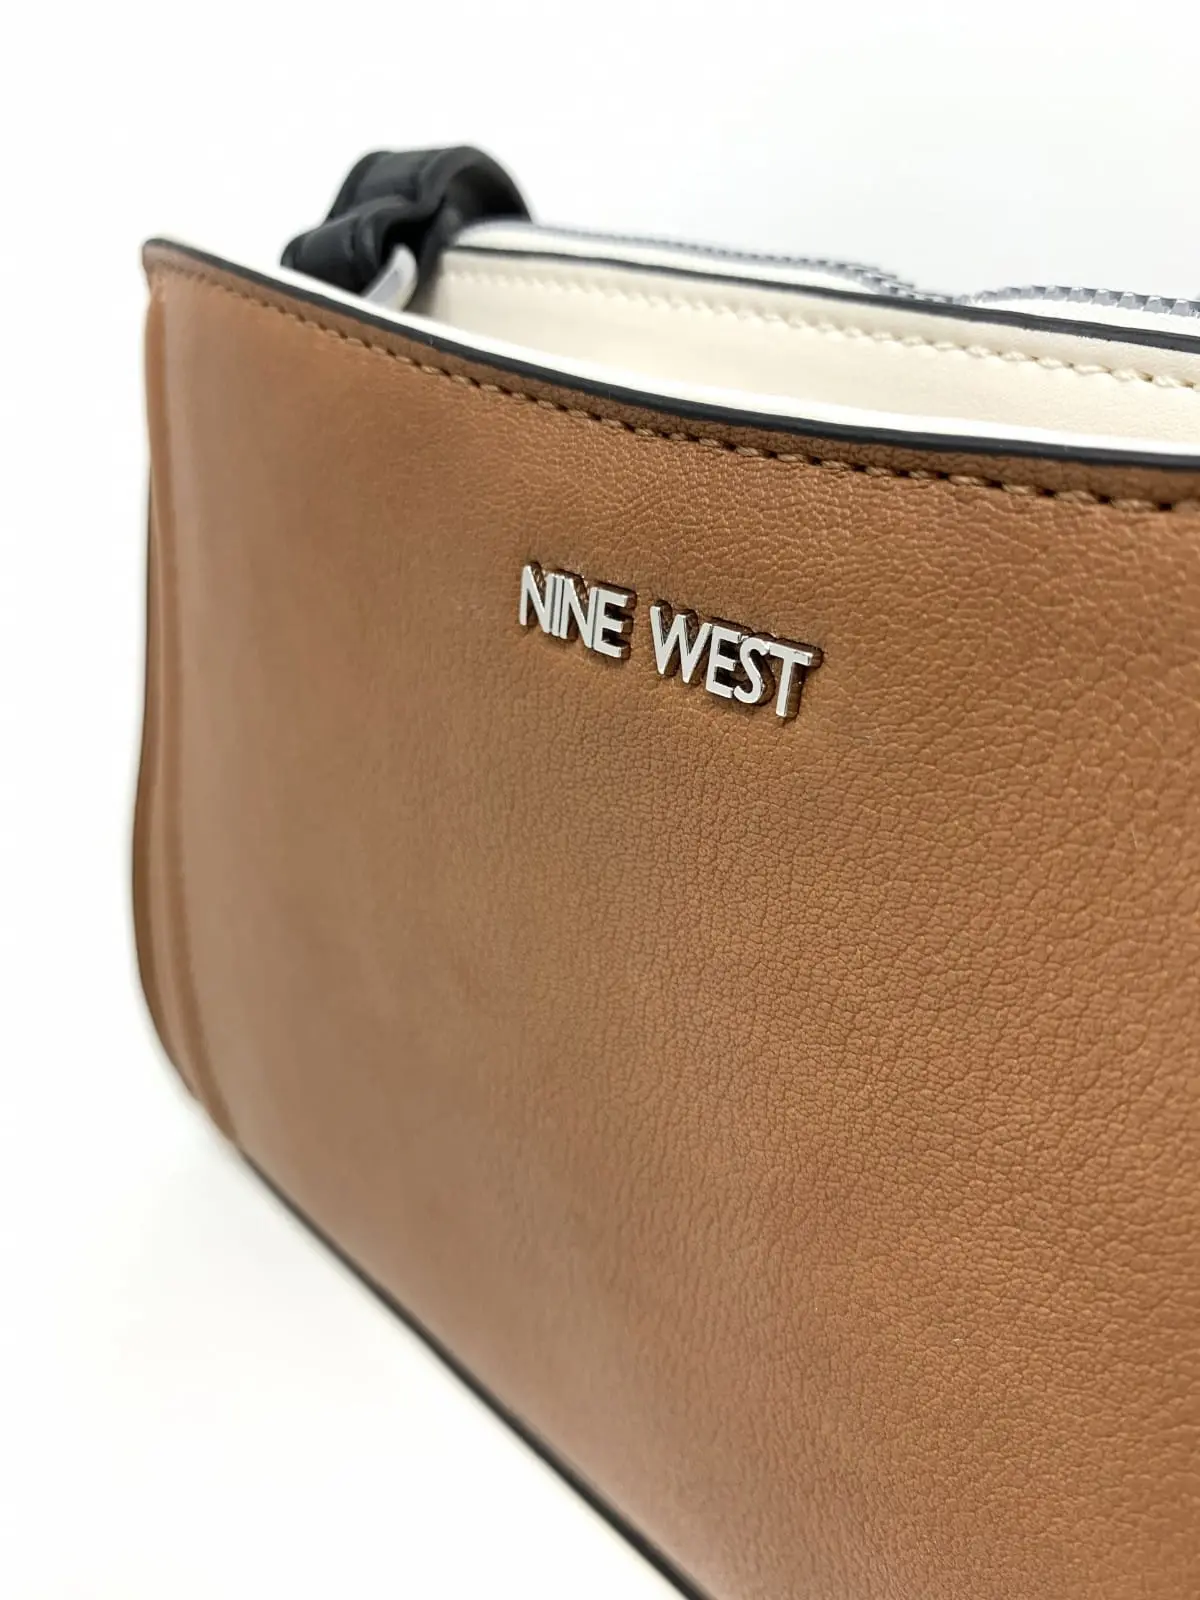 Nine west clutch wallet - Gem